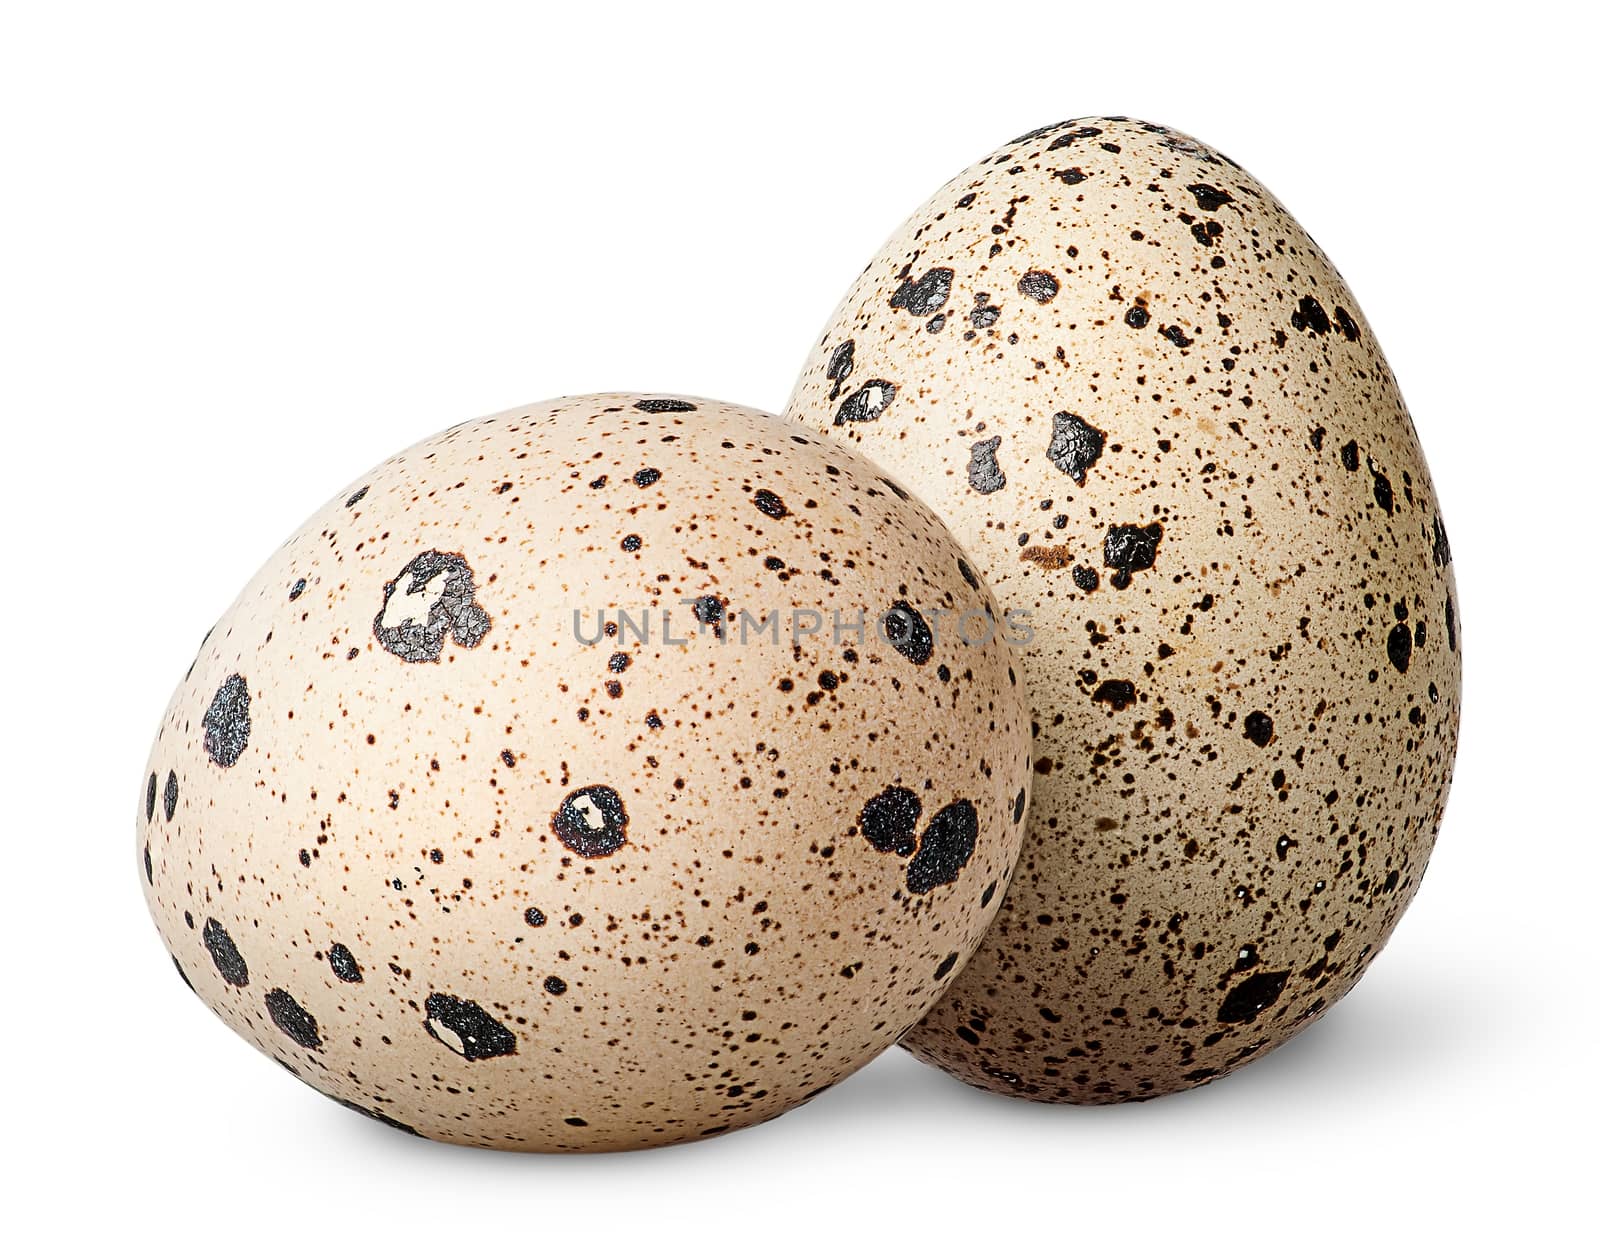 Two quail eggs beside by Cipariss